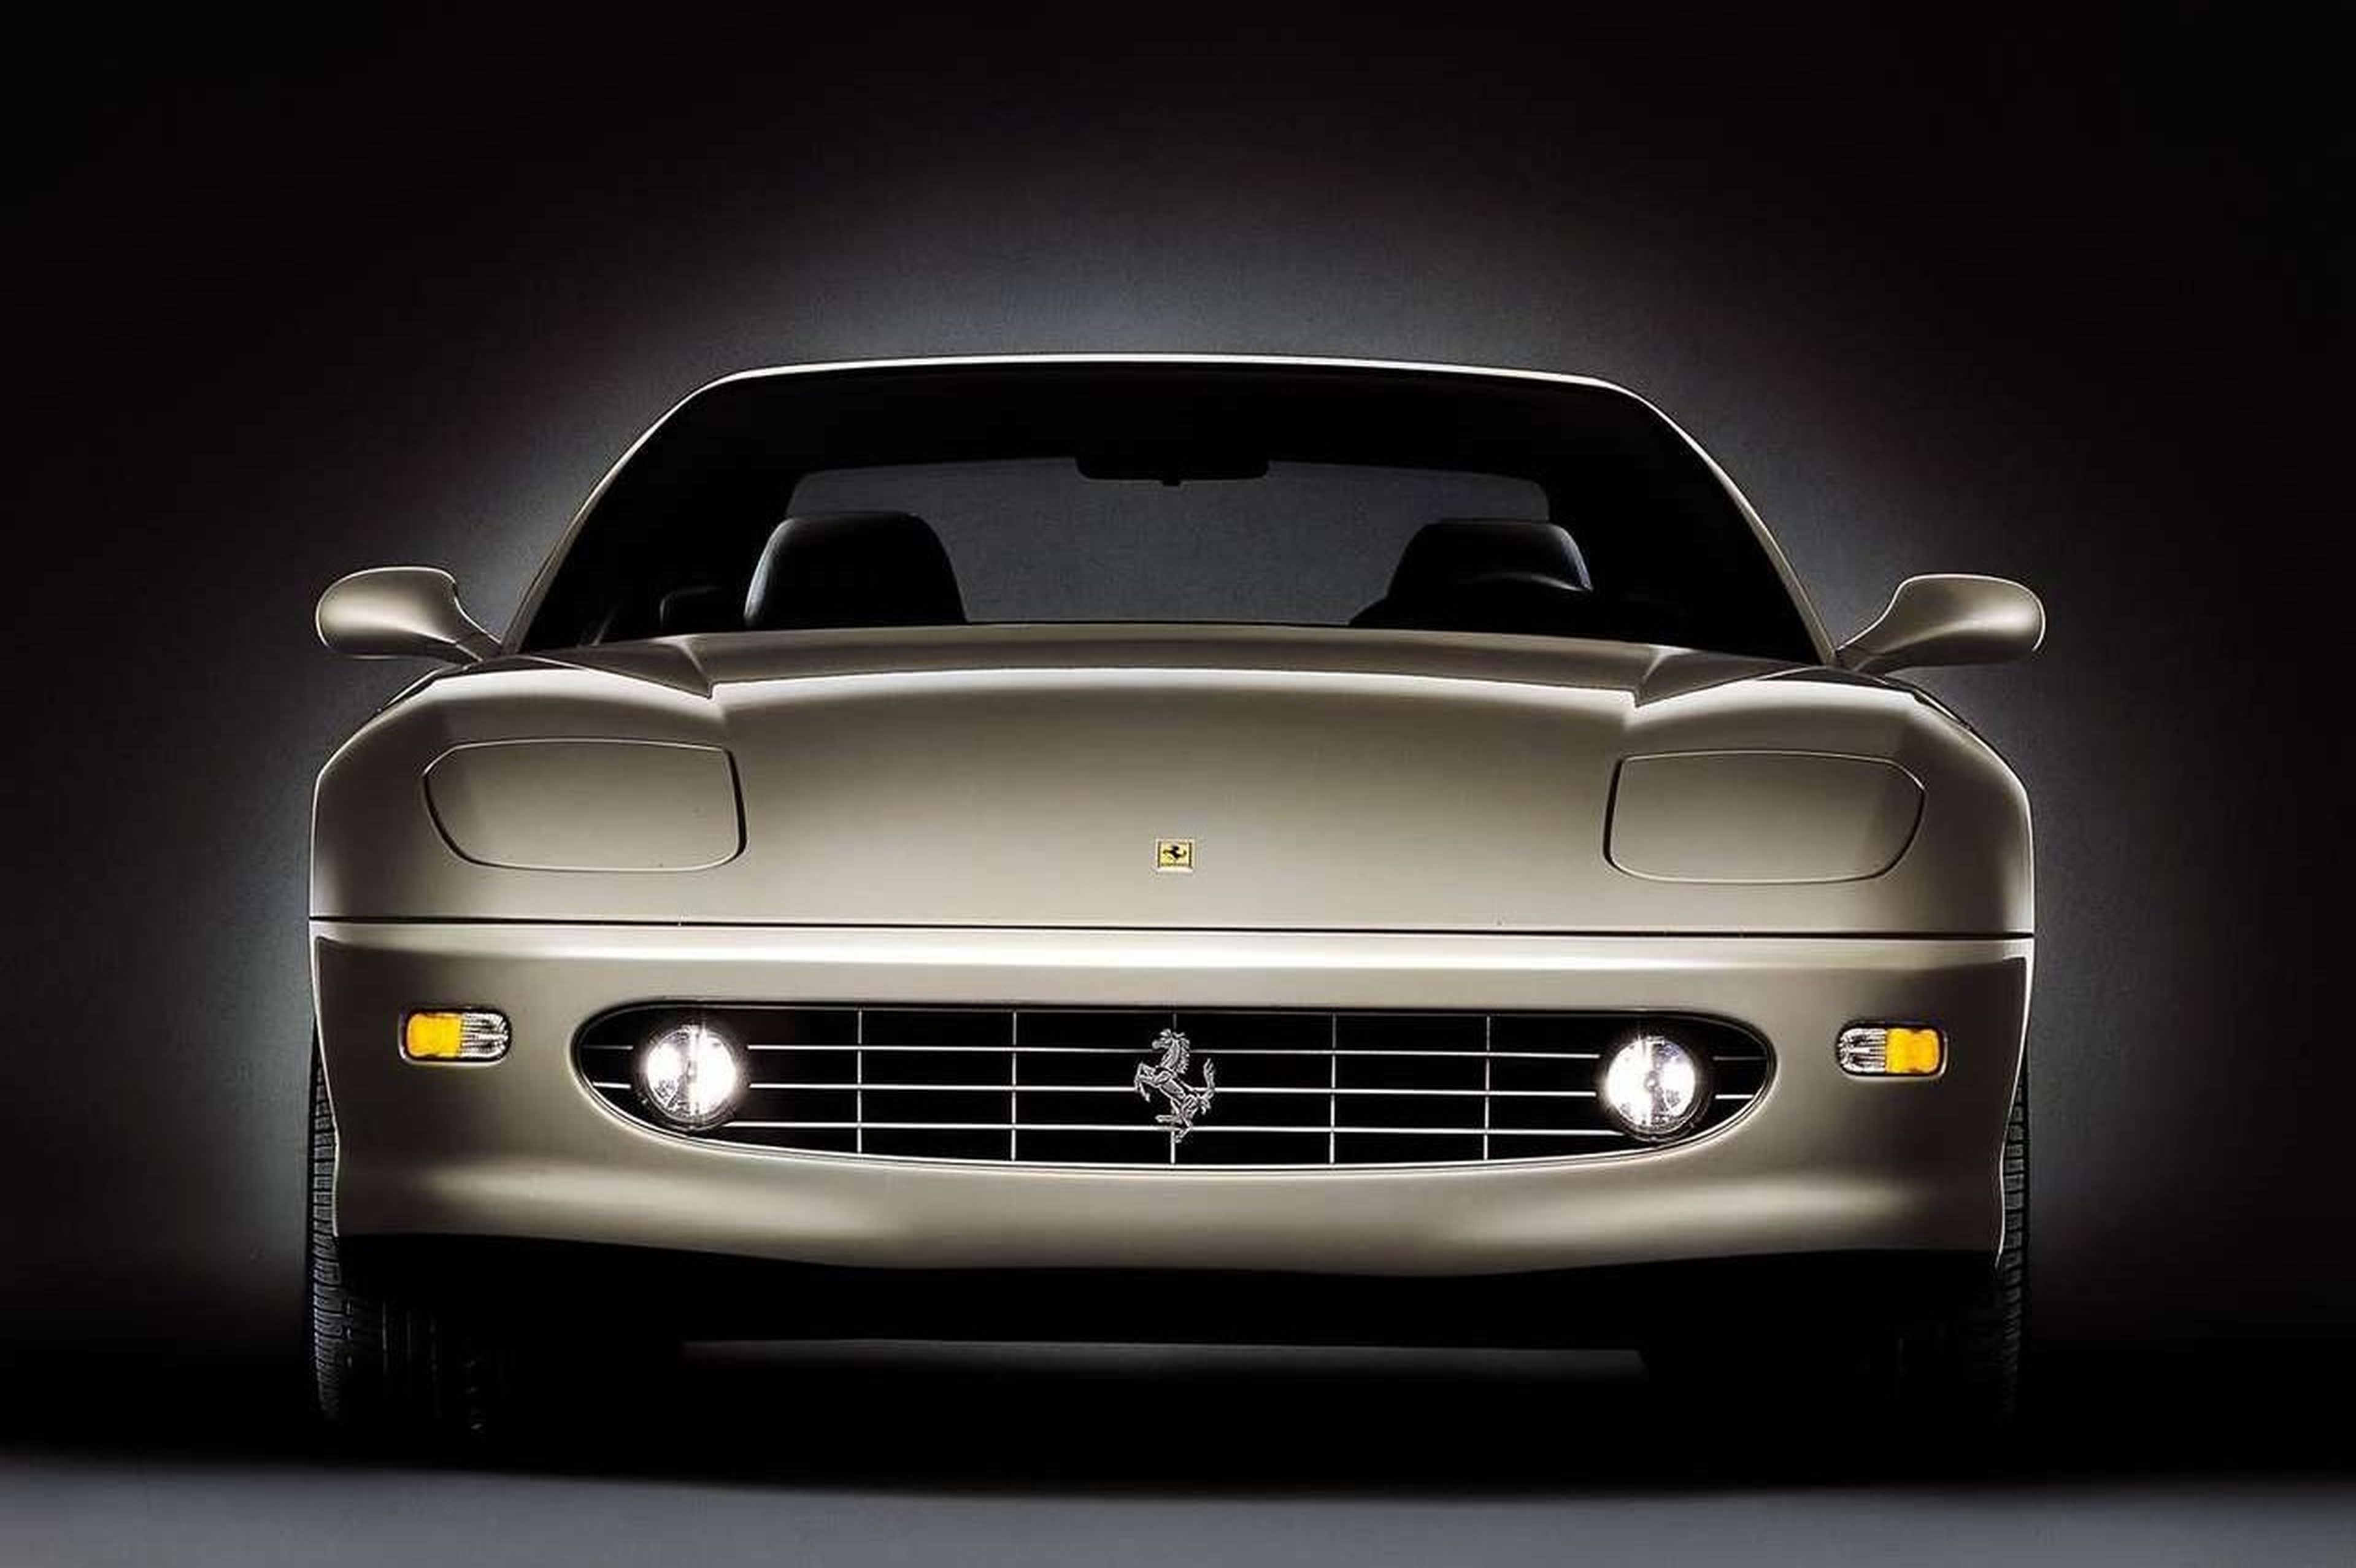 La increíble historia del Ferrari 456 GT